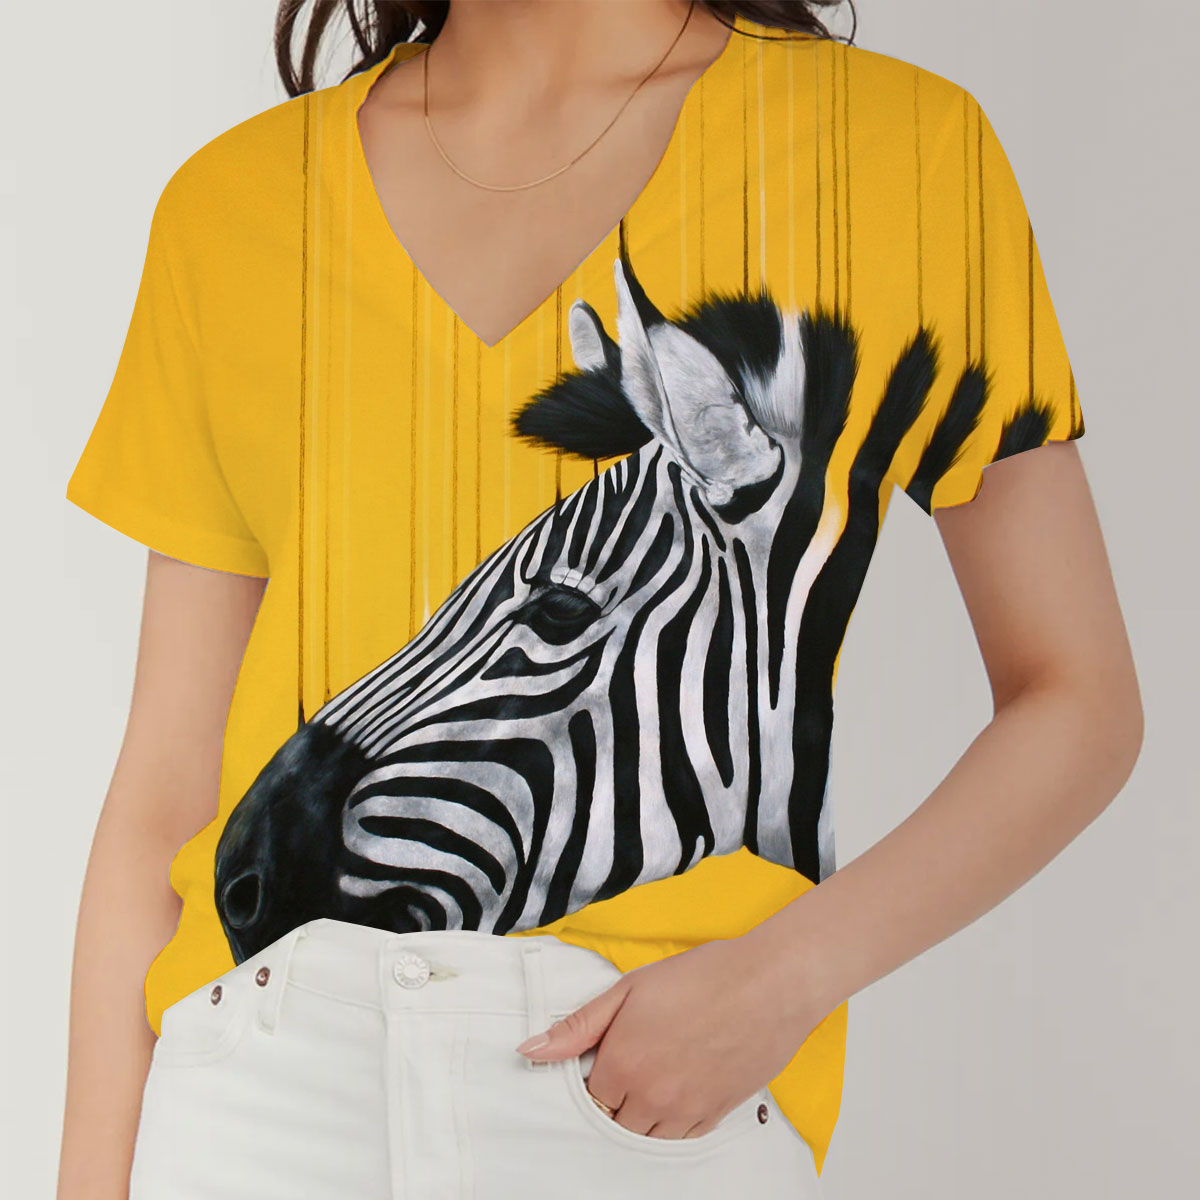 Zebra Abstract V-Neck Women's T-Shirt_1_2.1